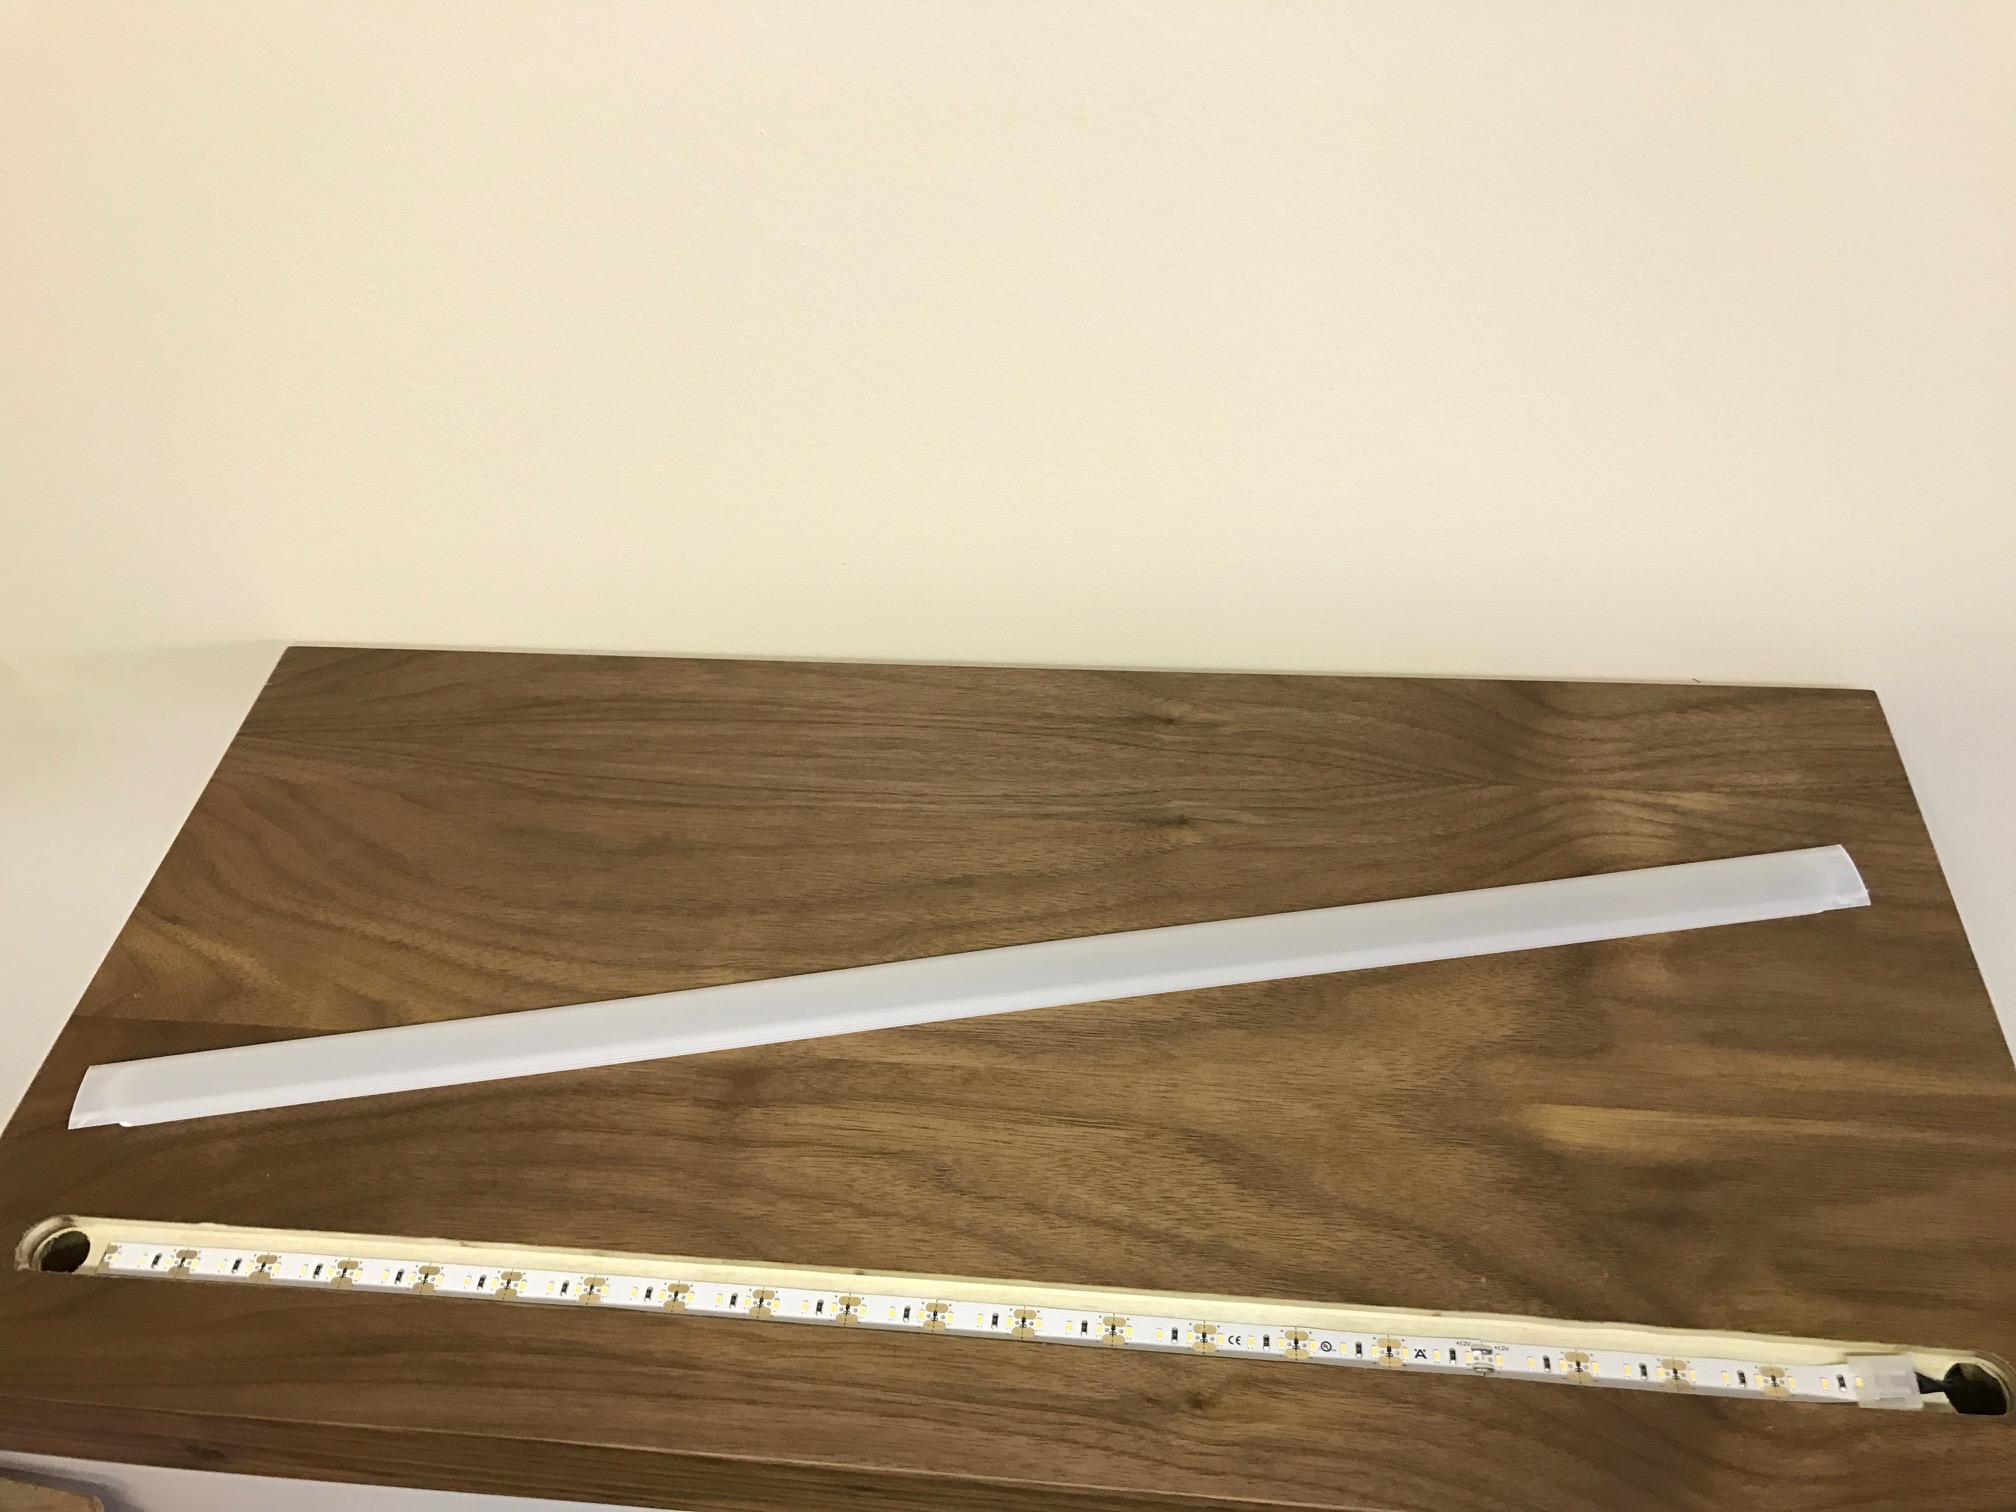 led lighting options for custom floating shelves img with shelf groove strip corner cabinet glass granite island brackets ikea white block installing self adhesive vinyl tile over